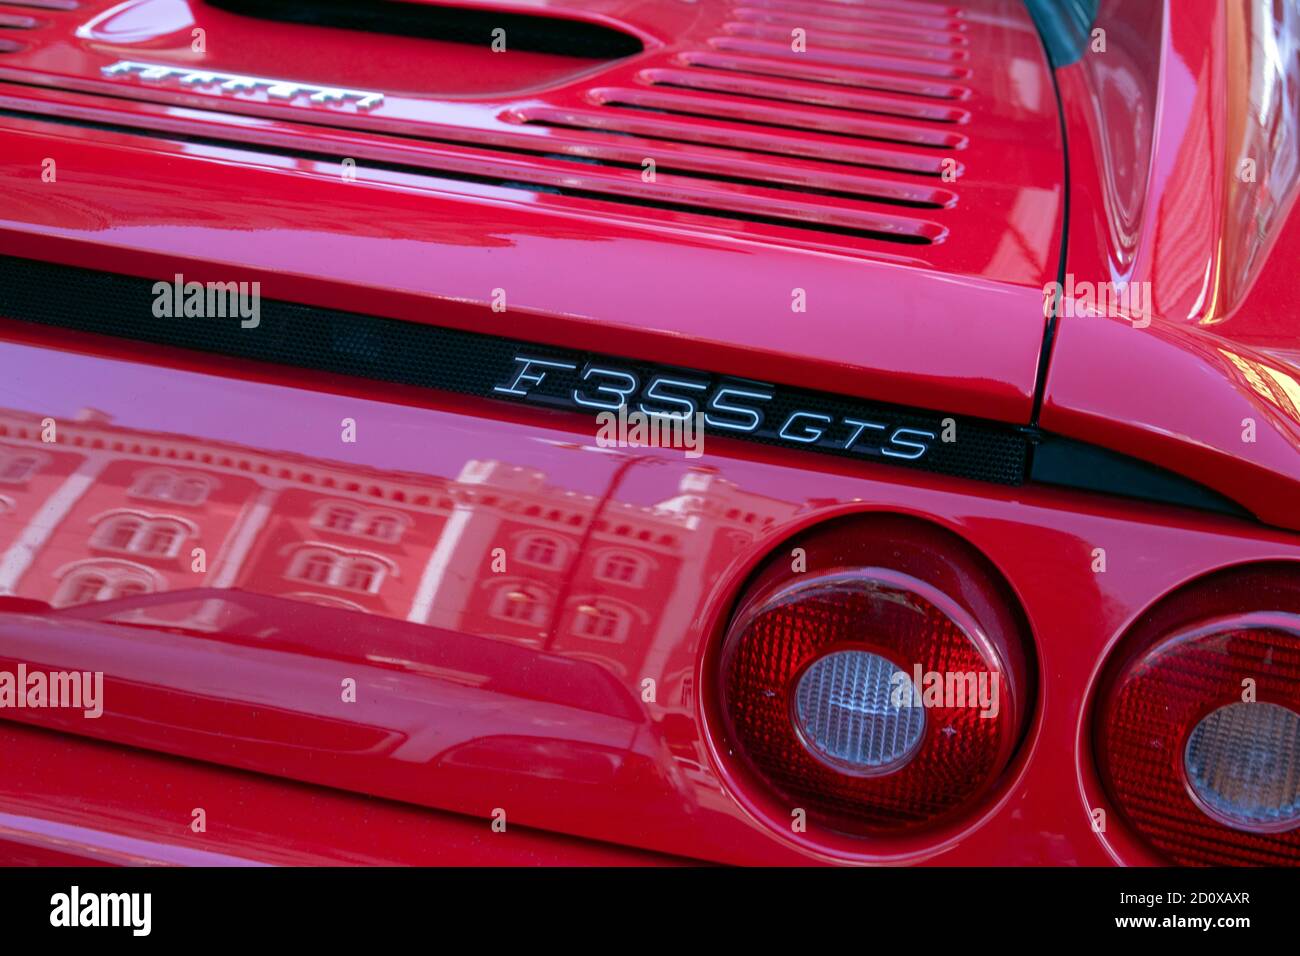 Rot geparkten Ferrari F355 gts Cabrio in der berühmten roten farbe ferarri. Die Typenbezeichnung F355 steht für 3500cc Hubraum und fünf Ventile p Stockfoto